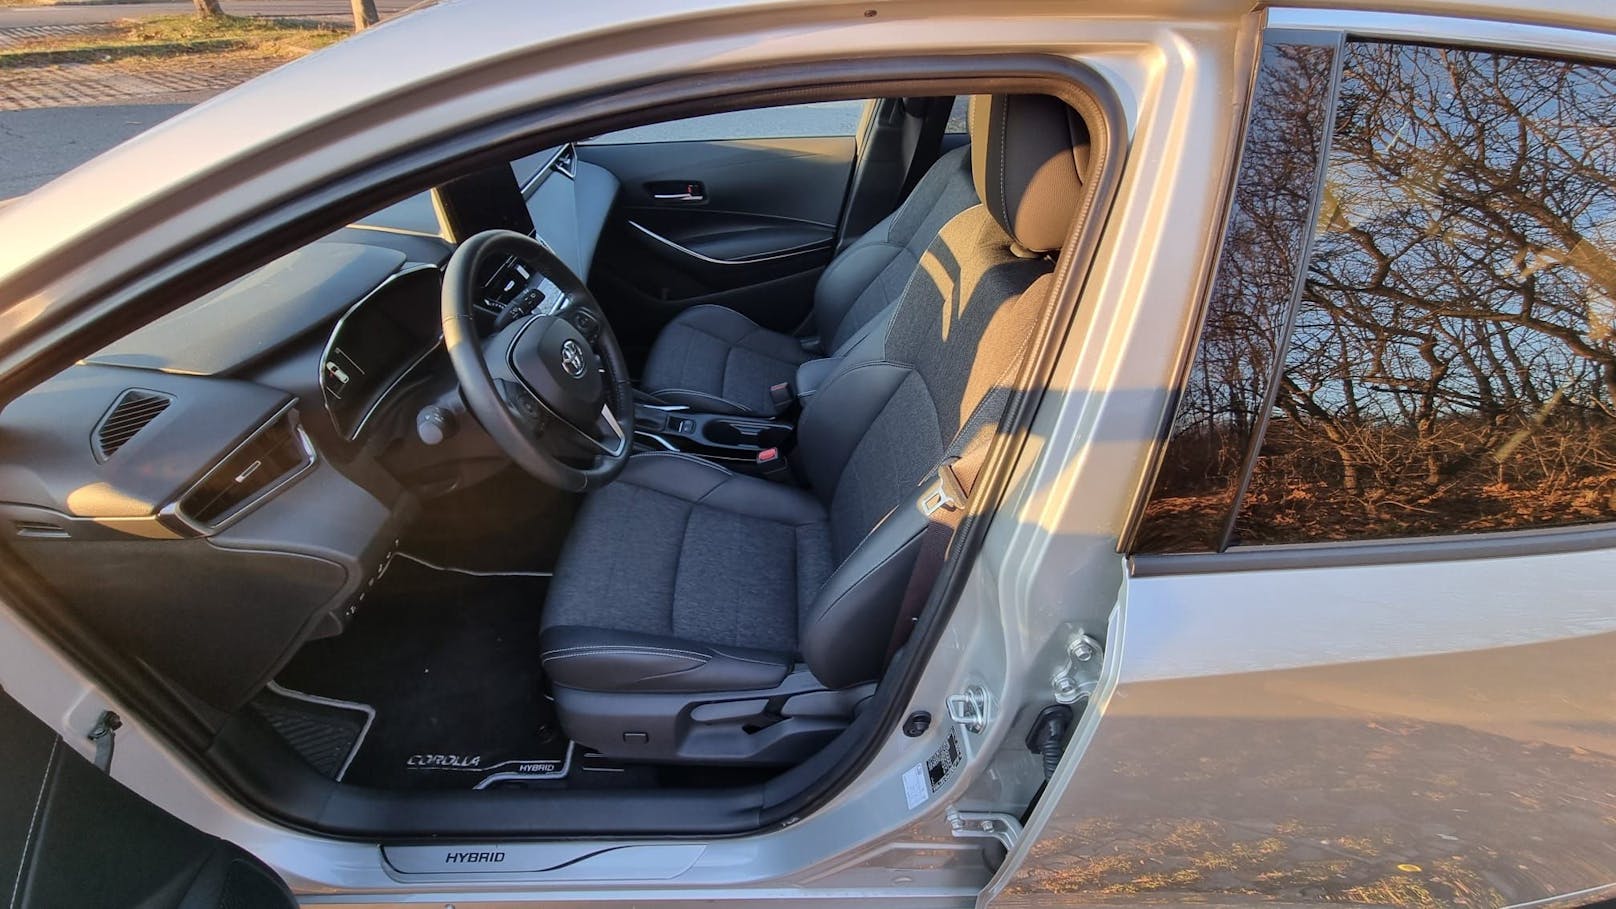 Im Innenraum des neuen Toyota Corolla wartet aber nicht nur eine aufgeputzte Optik inklusive Teilledersitze, 3-Speichenlenkrad samt Schnellfunktionen, ein überarbeitetes Armaturenbrett mit Softtouch-Oberflächen sowie eine ambiente Beleuchtung auf den Fahrer, sondern auch das neueste Toyota Smart Connect Multimediasystem.